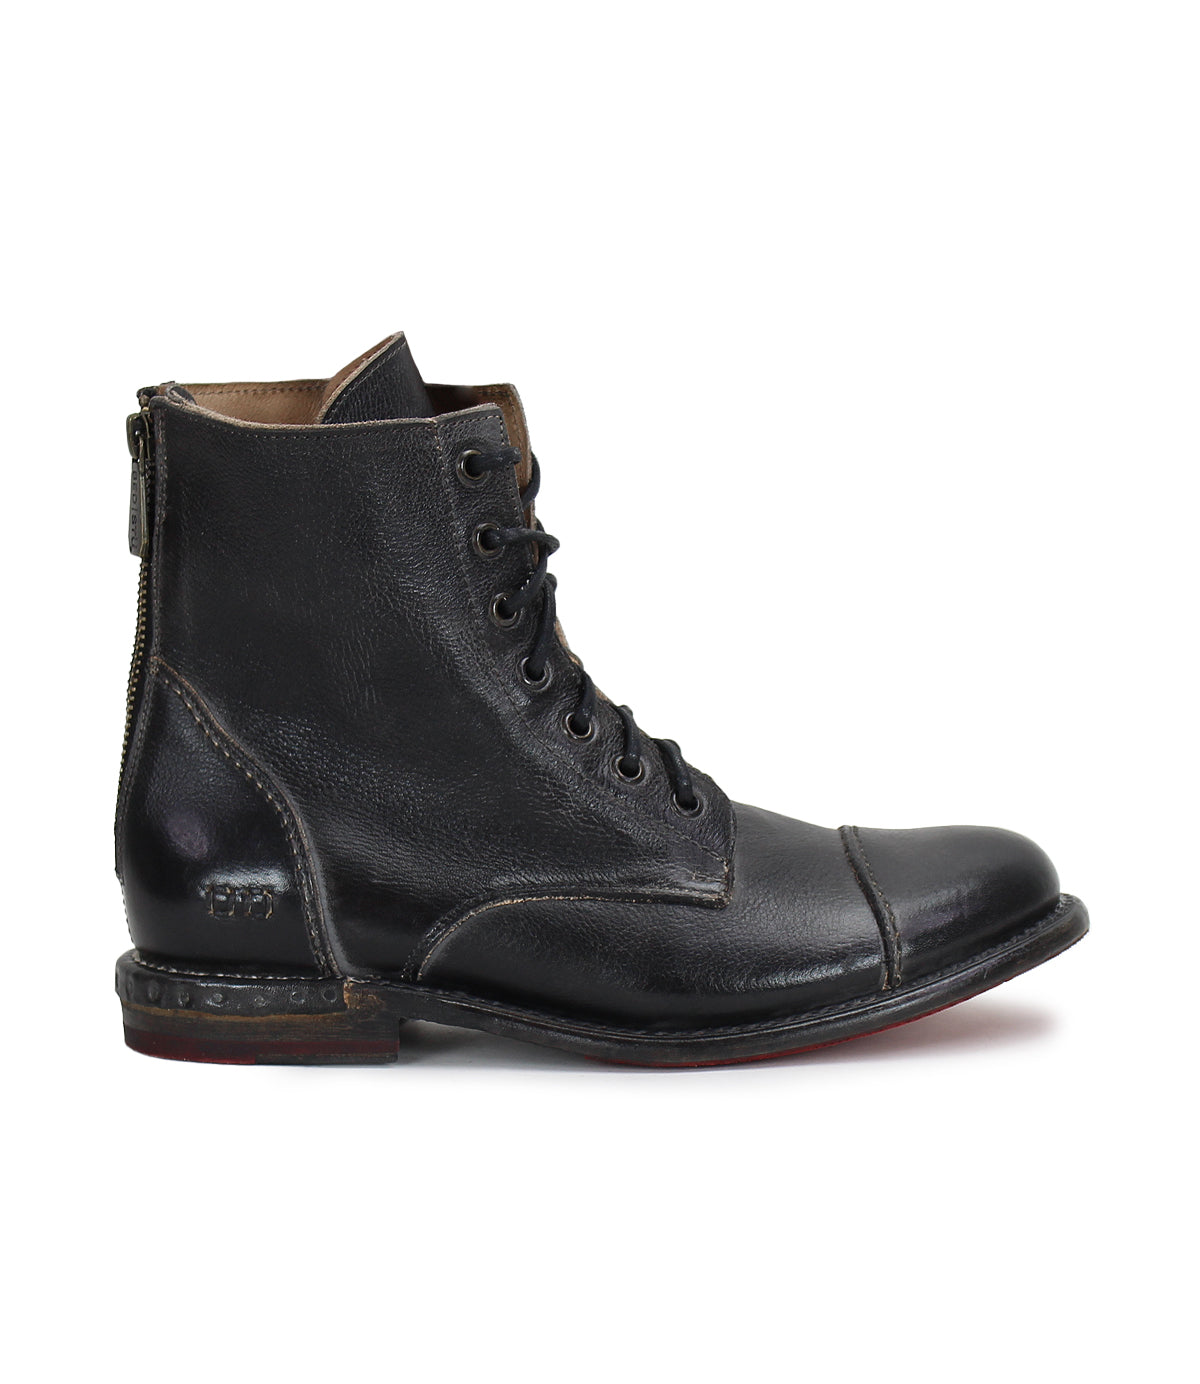 Bed Stu's Laurel men's black leather combat boots.